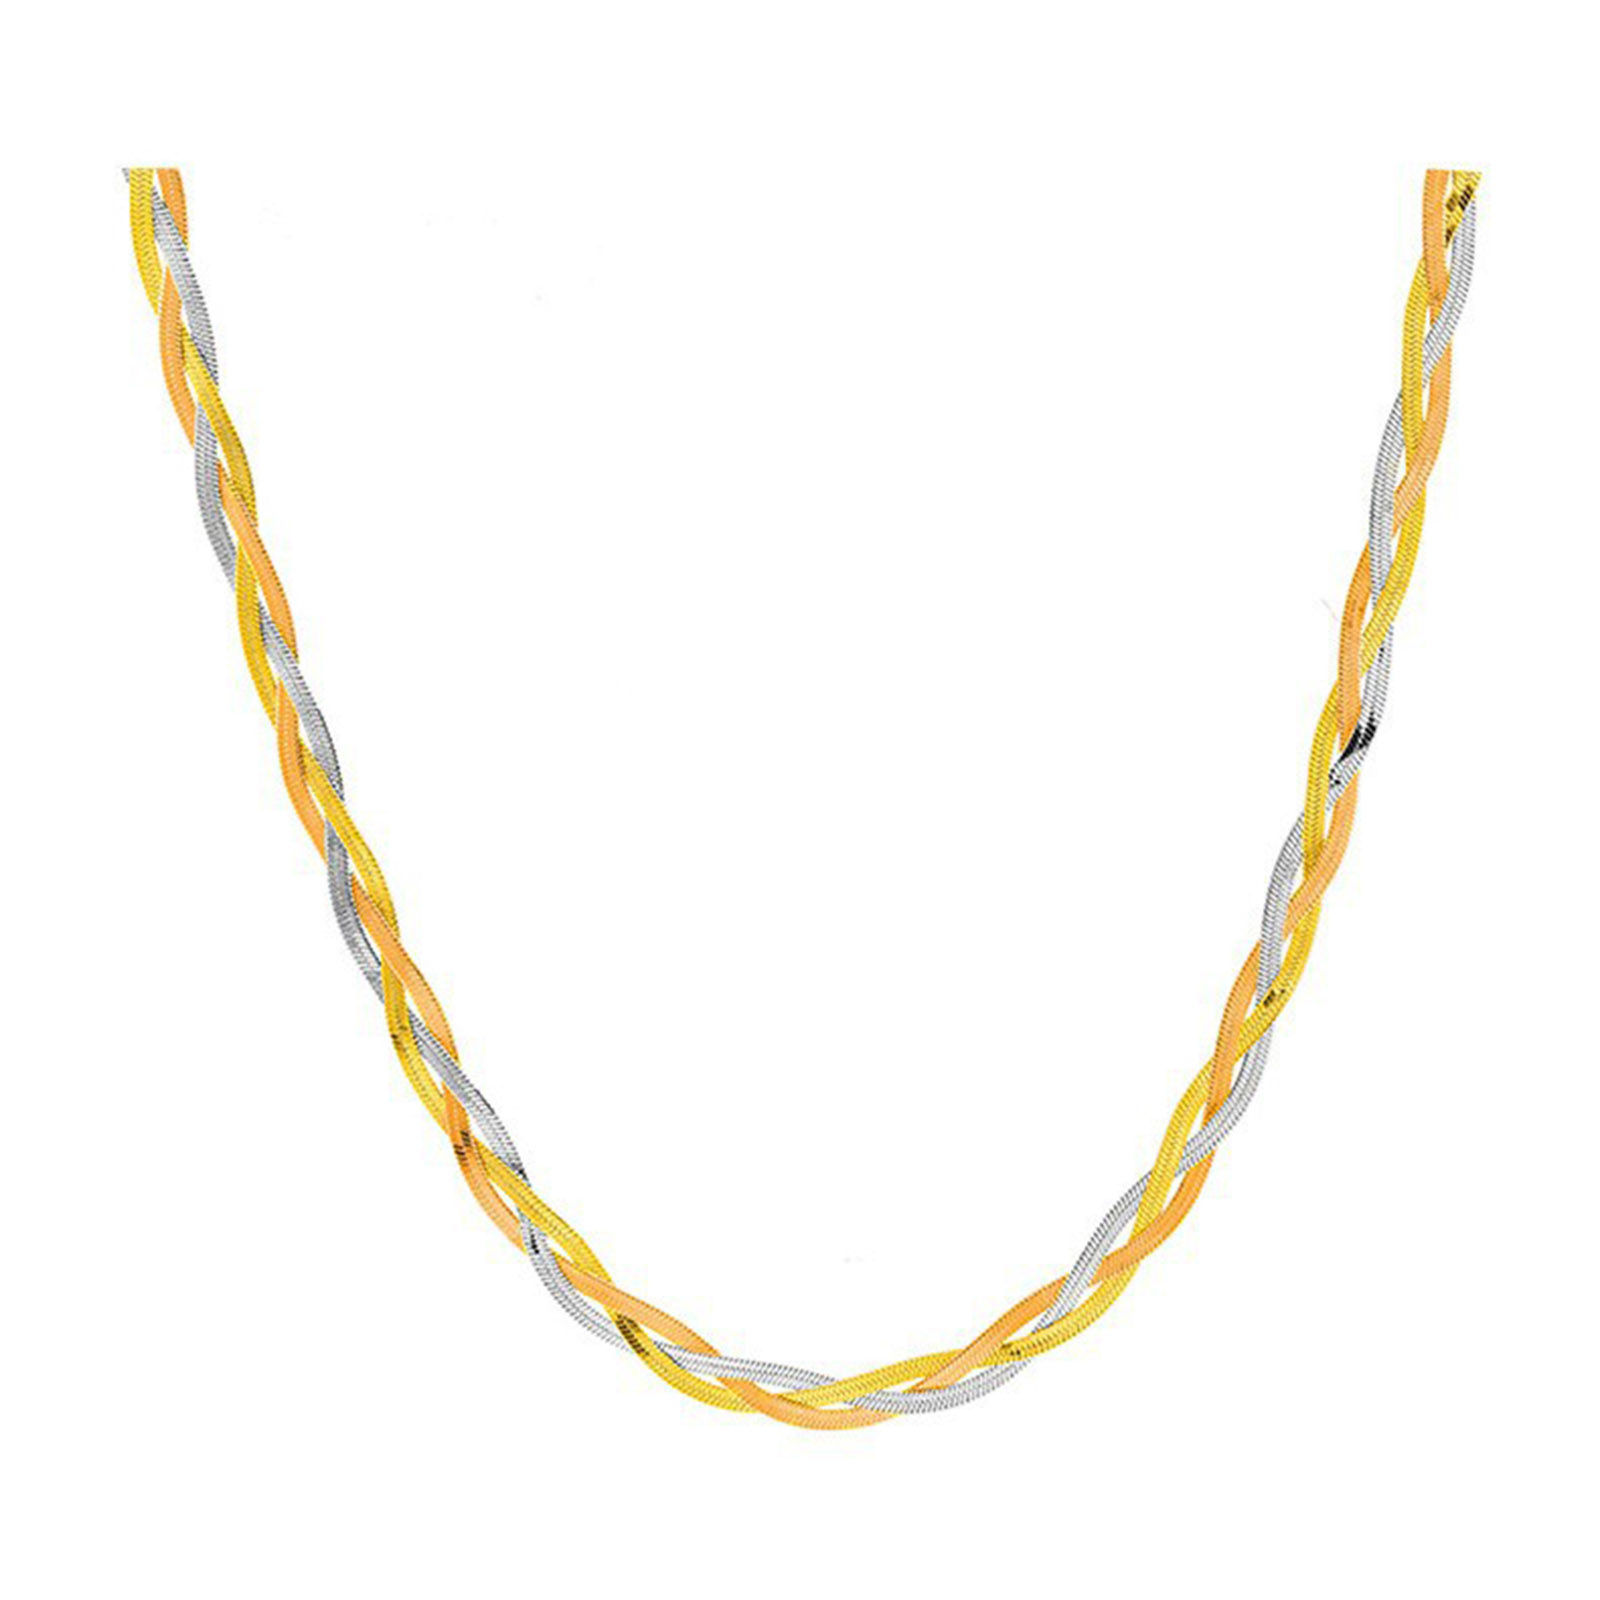 Image de Titanium Steel Ins Style Curb Link Chain Necklace Multicolor 40cm(15 6/8") long, 1 Piece